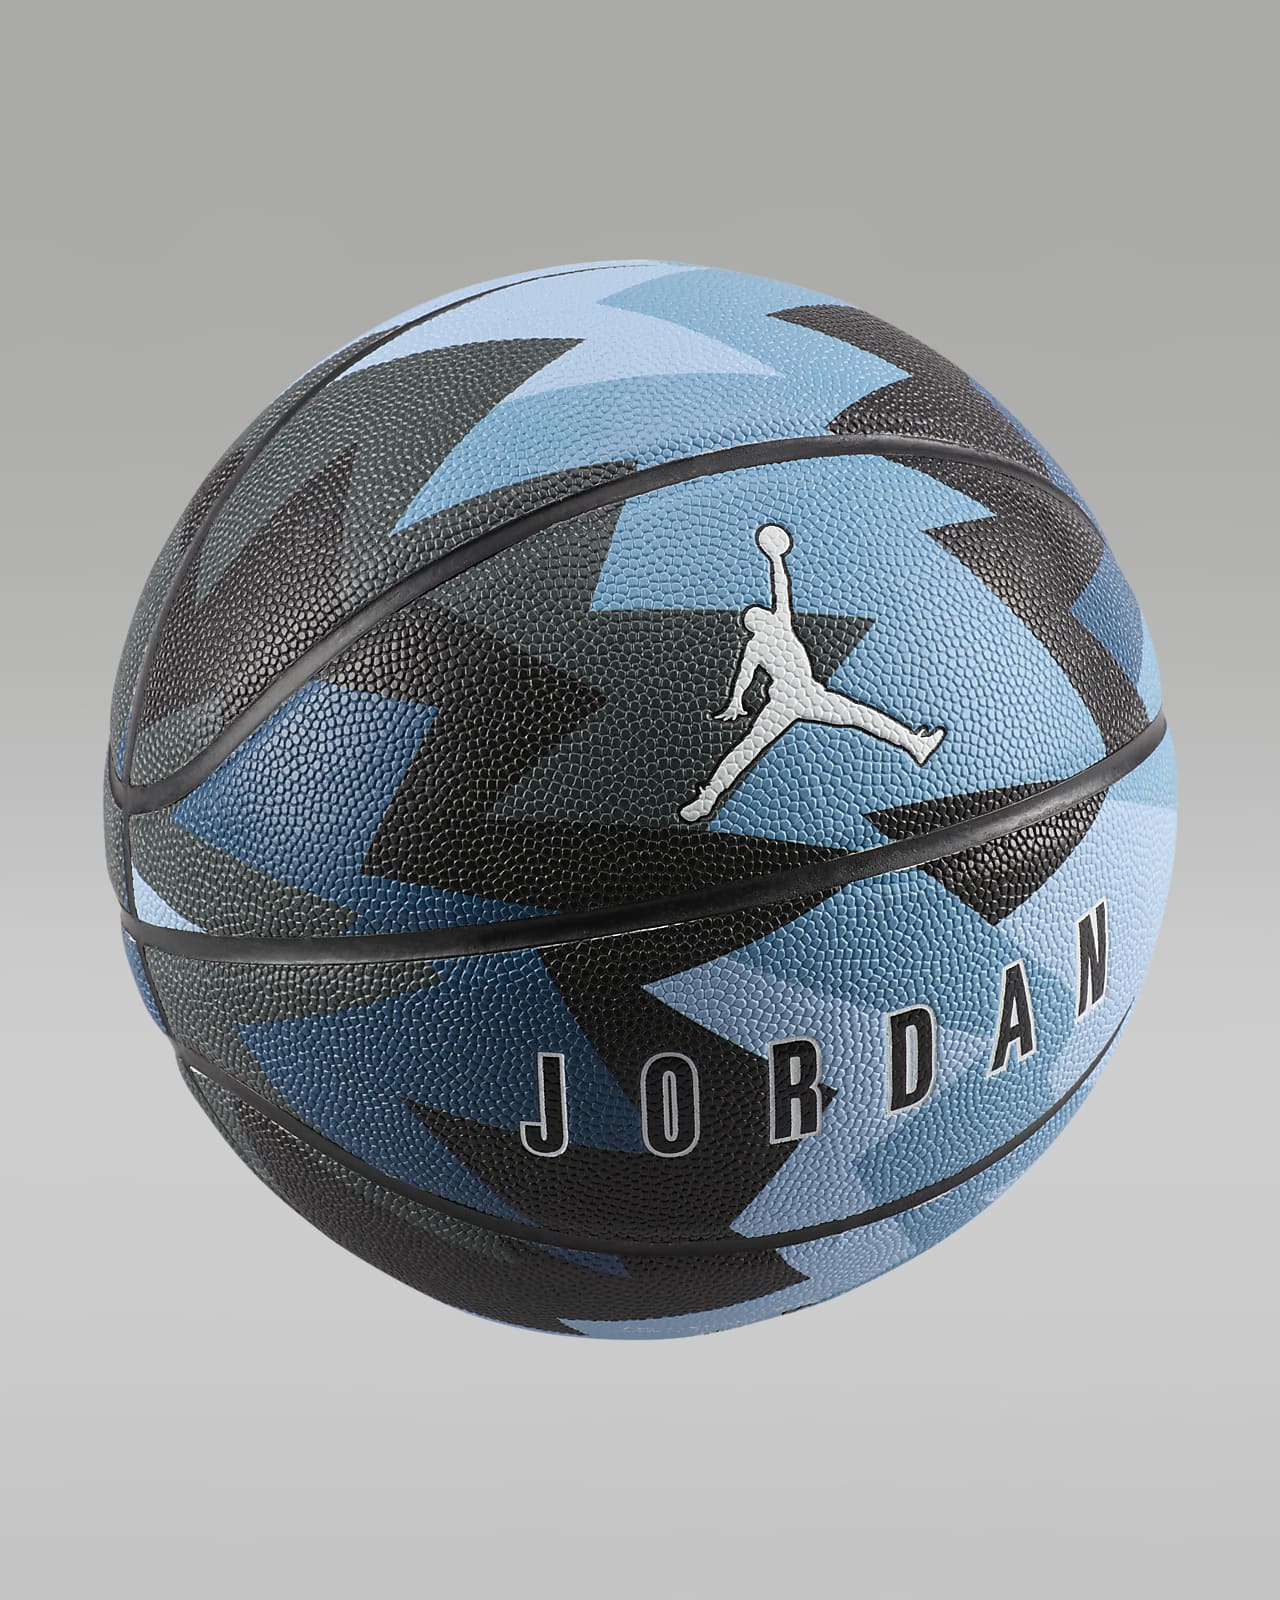 Jordan 8P kosárlabda (leeresztve)